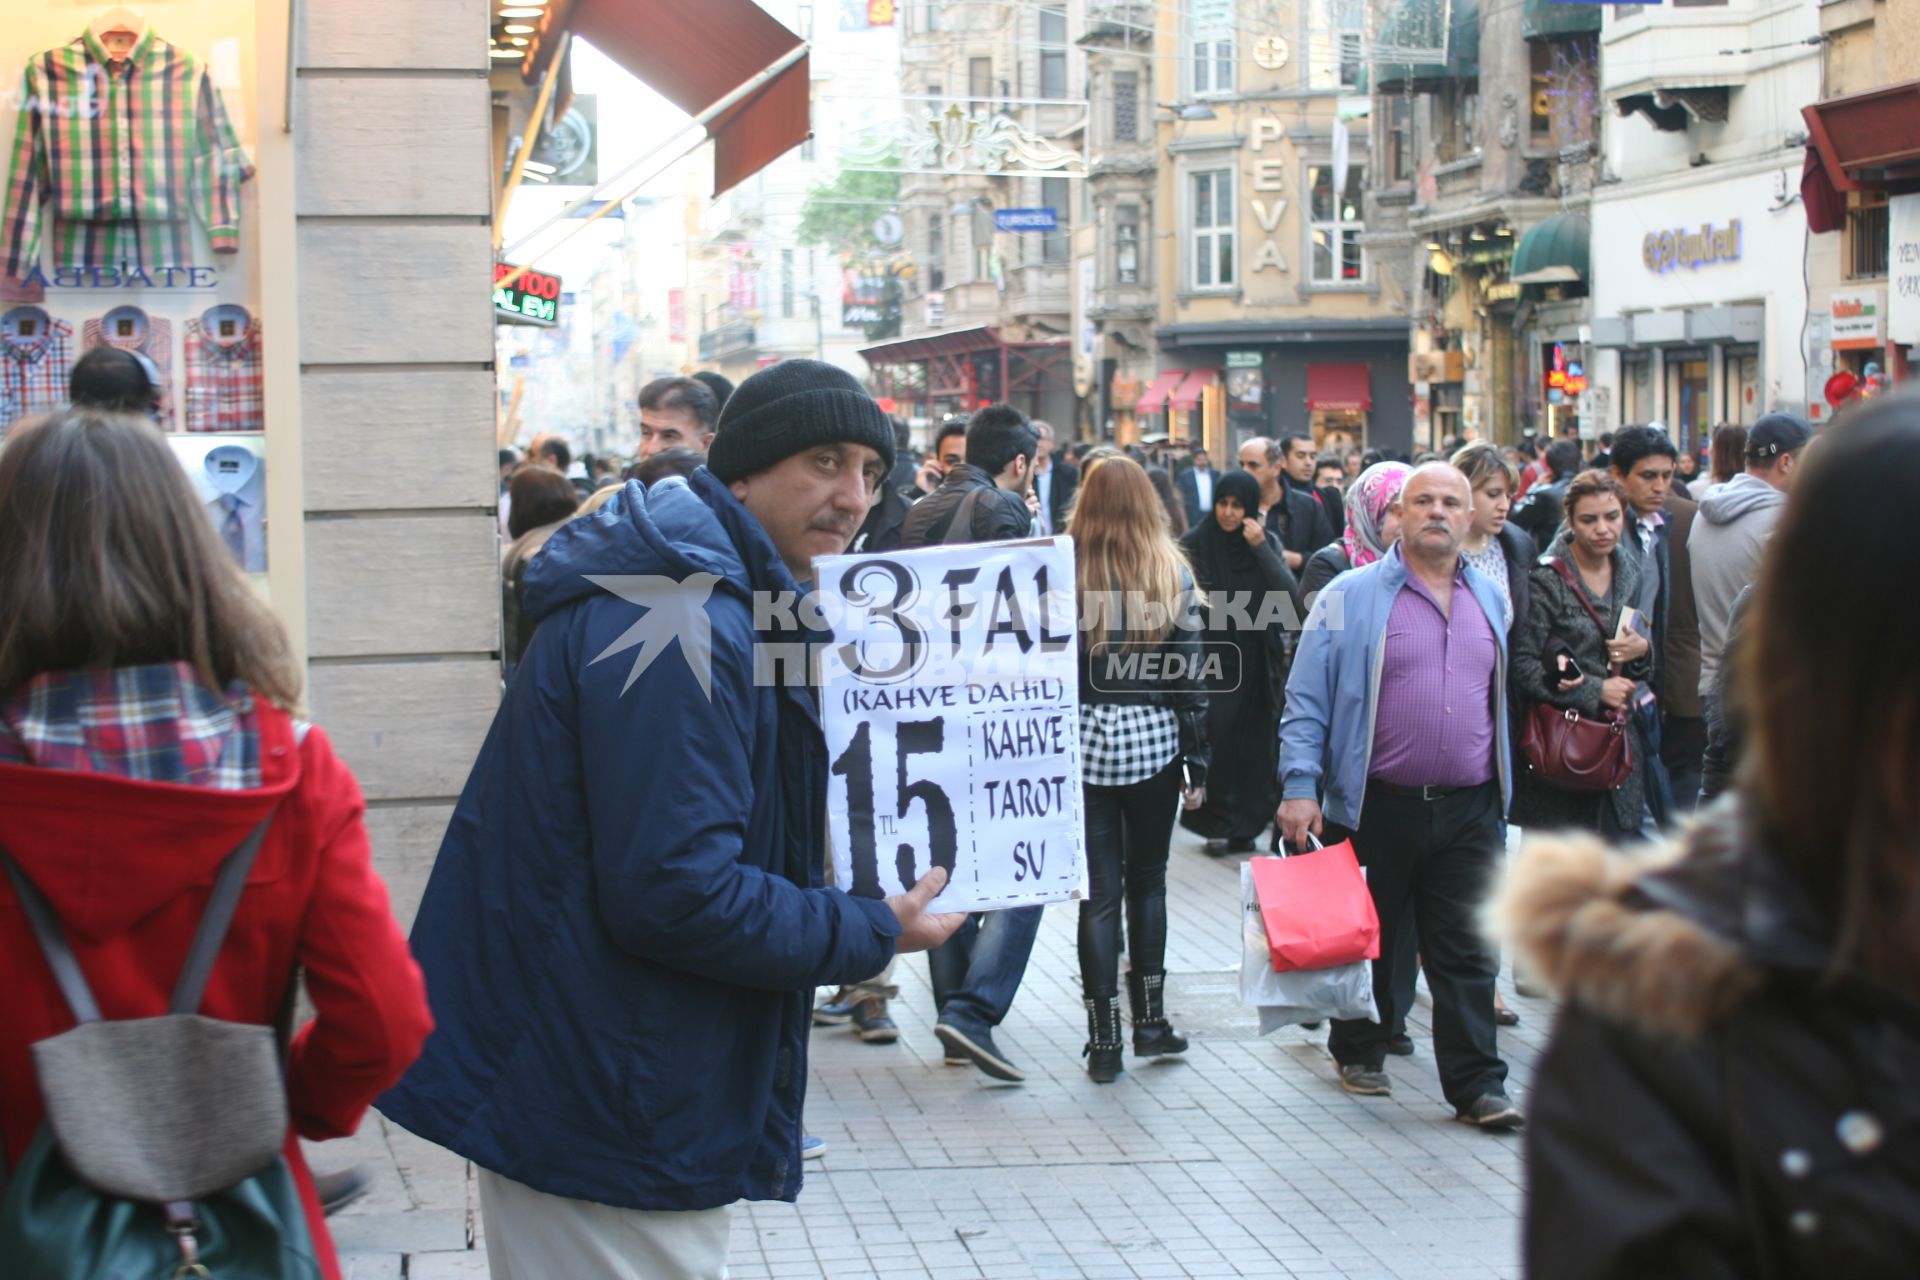 Турция, Стамбул. Мужчина с рекламой трех видов гадания - на кофейной гуще, картах таро и руке.